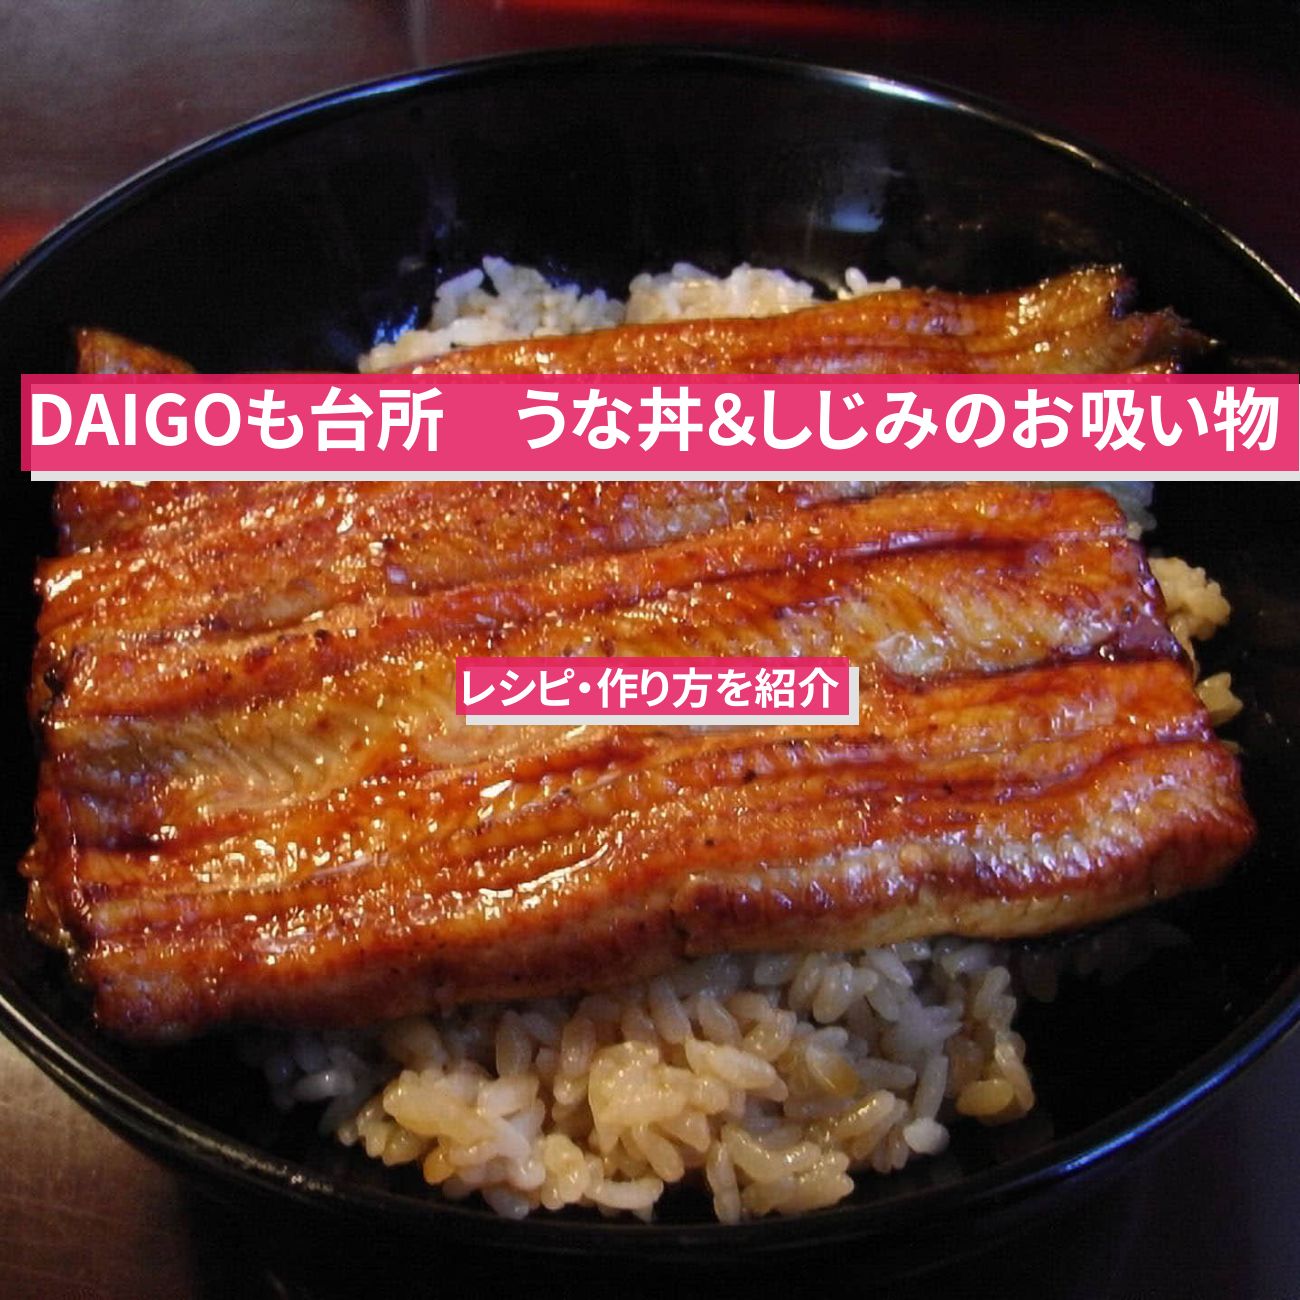 【DAIGOも台所】『うな丼＆しじみのお吸い物』のレシピ・作り方を紹介〔ダイゴも台所〕